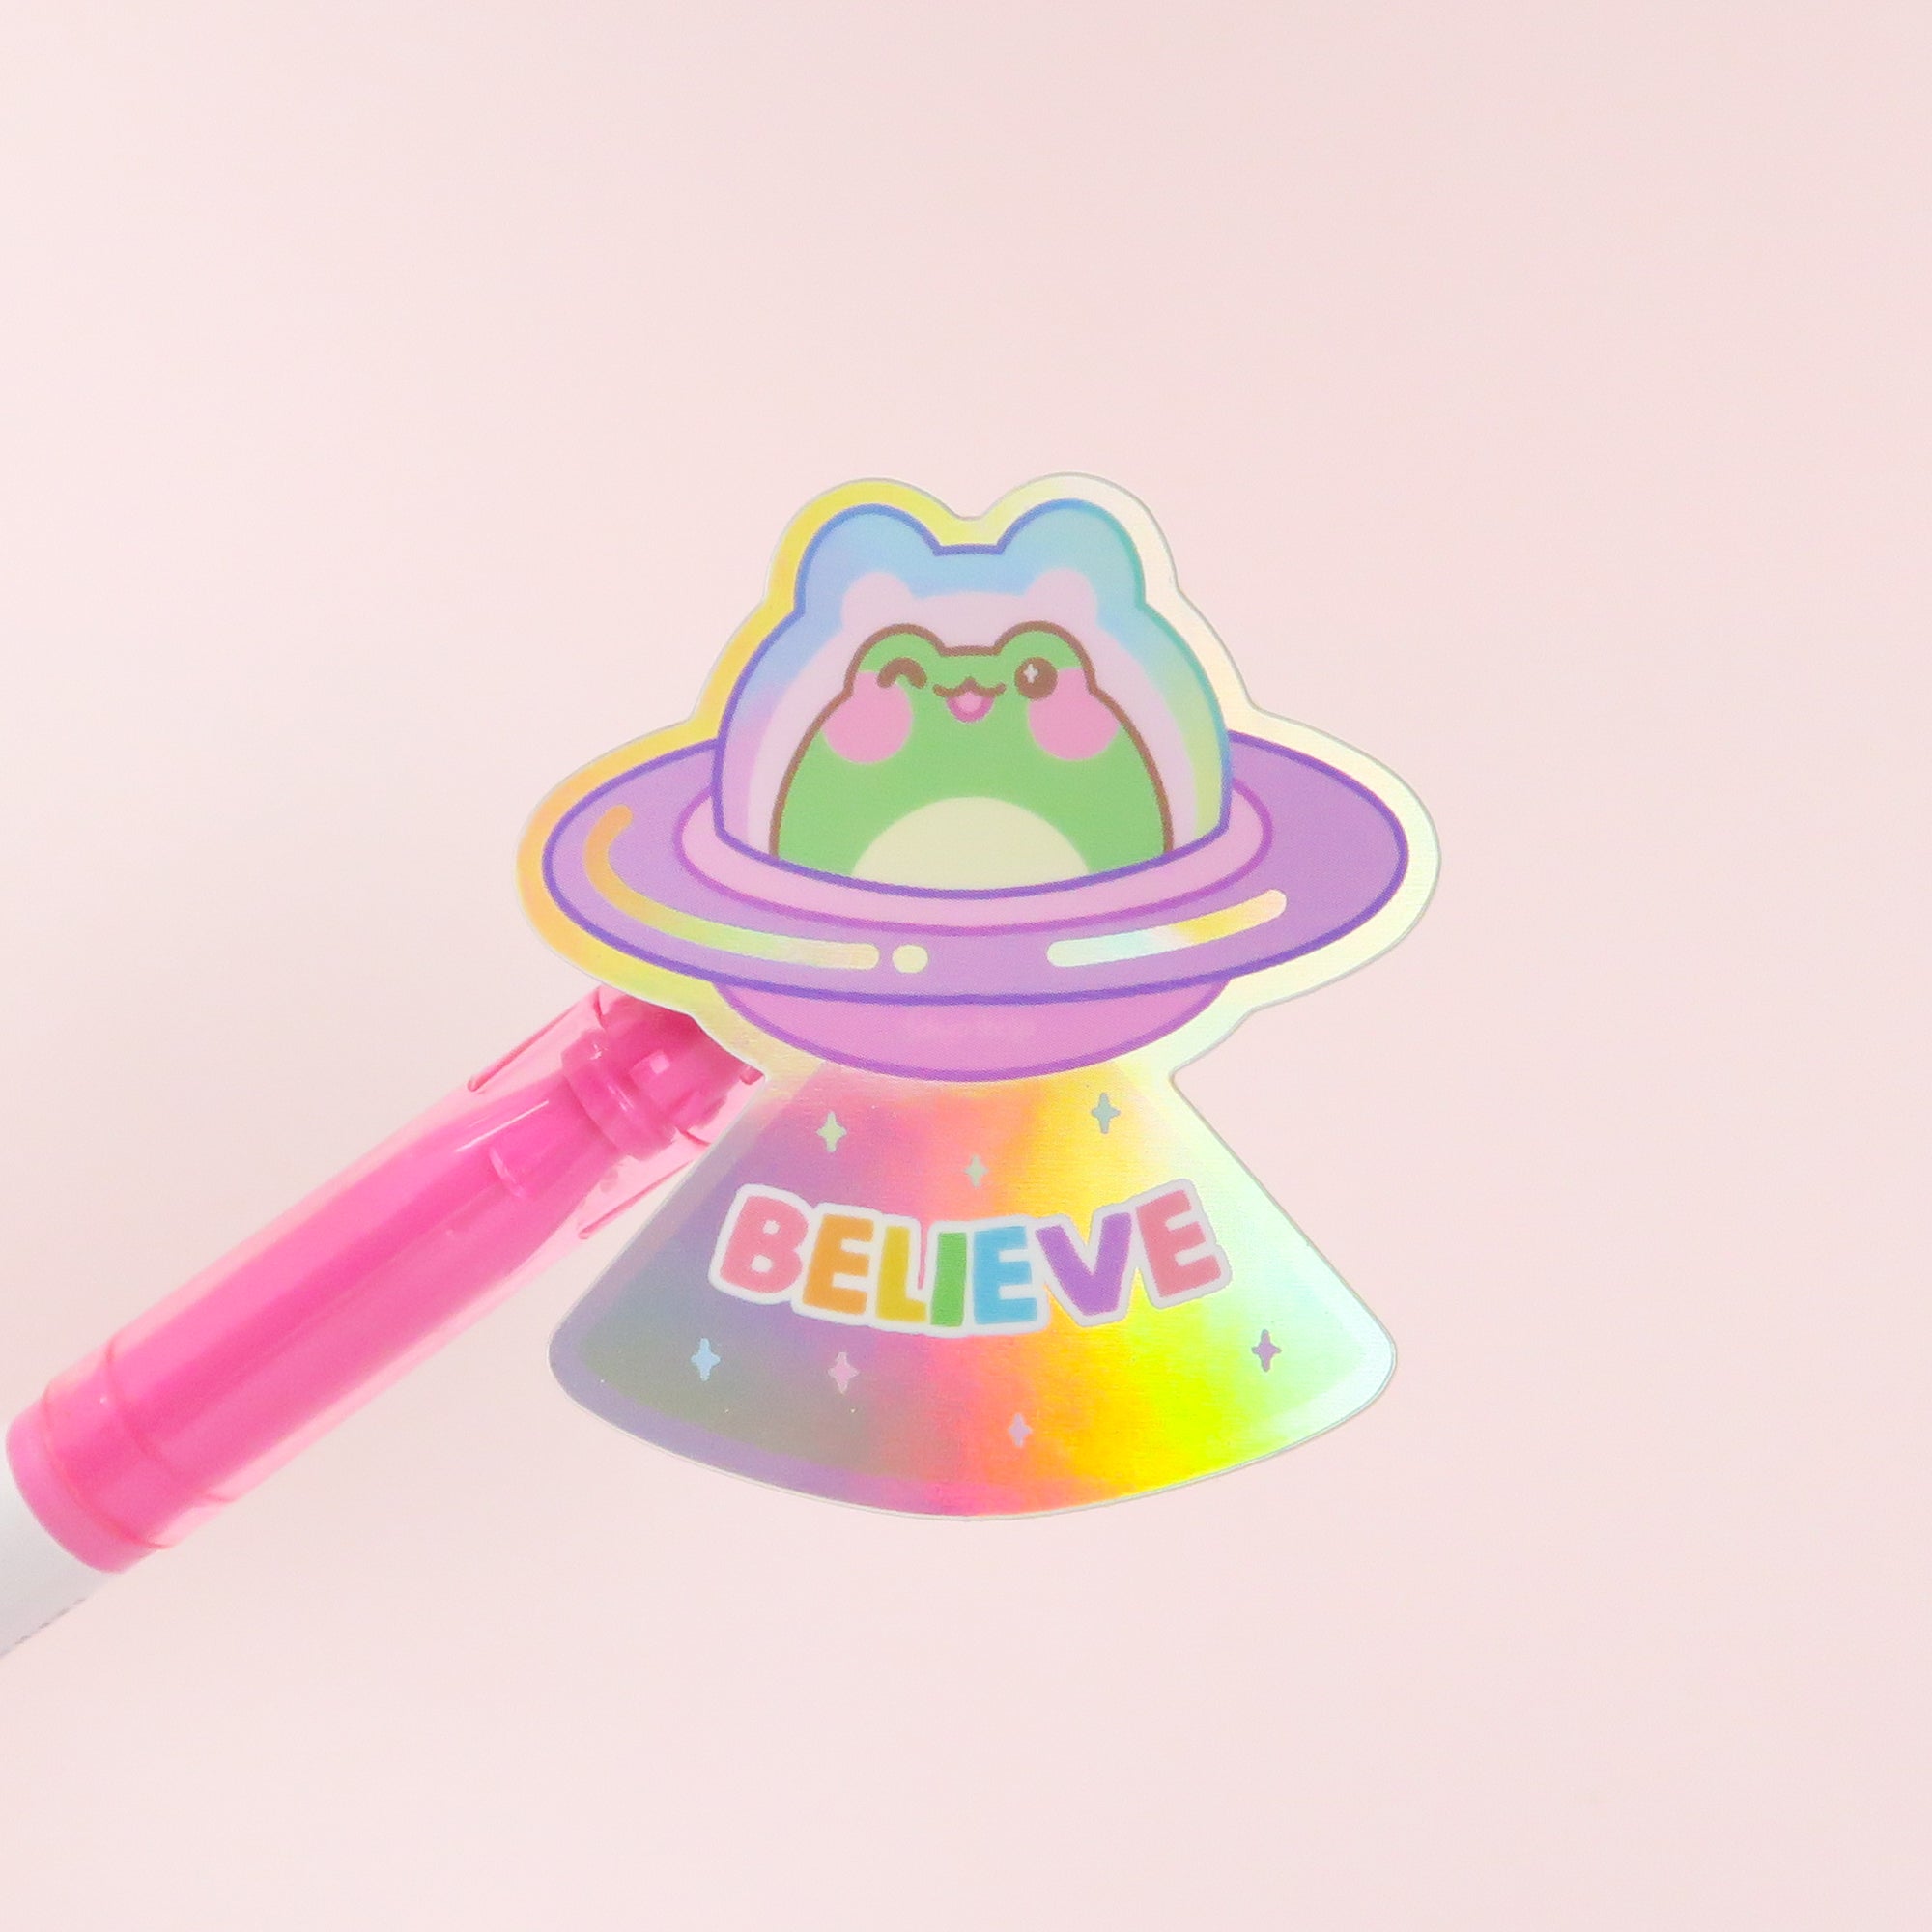 Believe UFO Holo Sticker